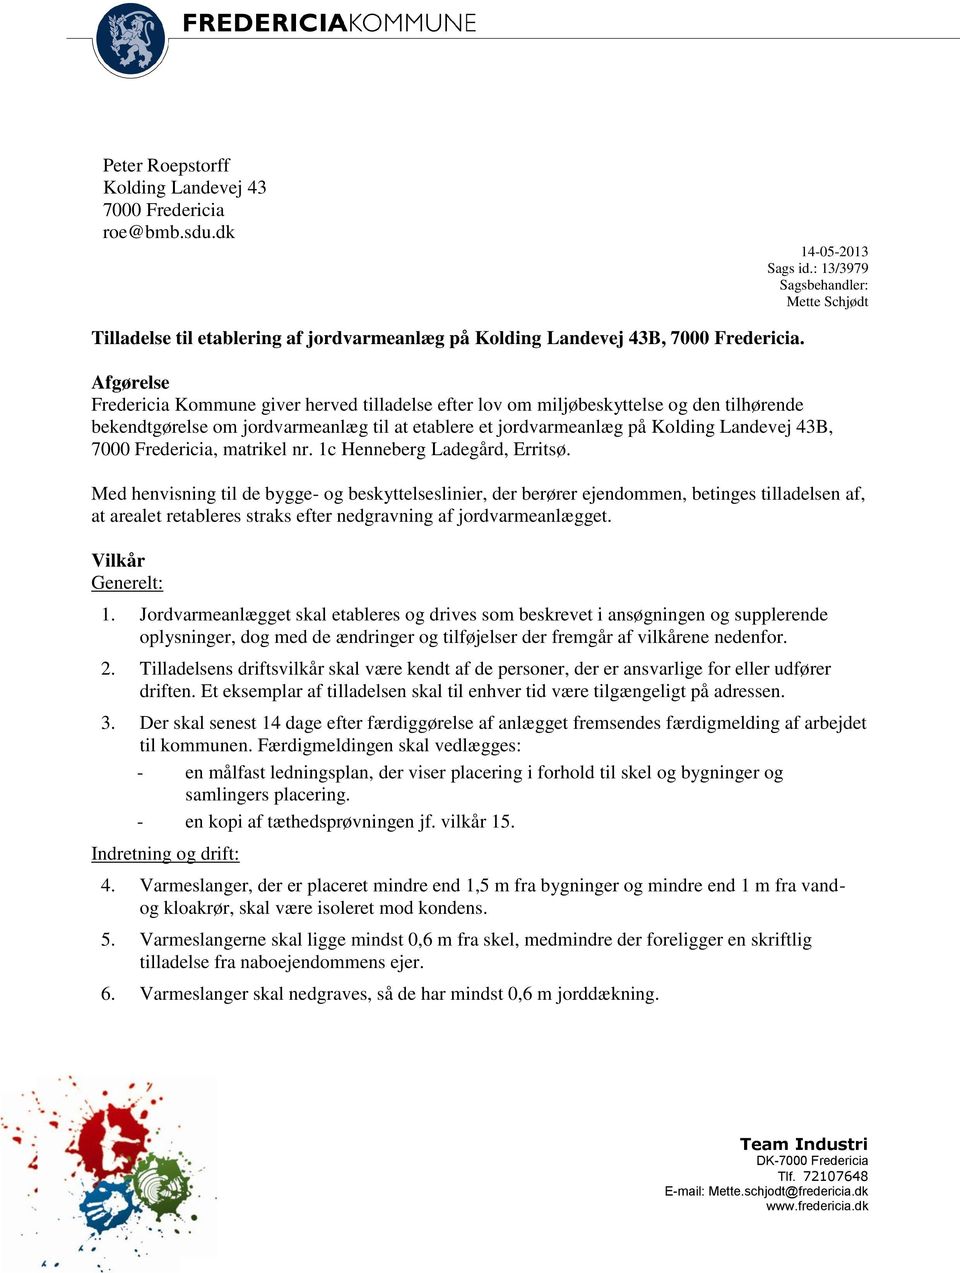 Afgørelse Fredericia Kommune giver herved tilladelse efter lov om miljøbeskyttelse og den tilhørende bekendtgørelse om jordvarmeanlæg til at etablere et jordvarmeanlæg på Kolding Landevej 43B, 7000